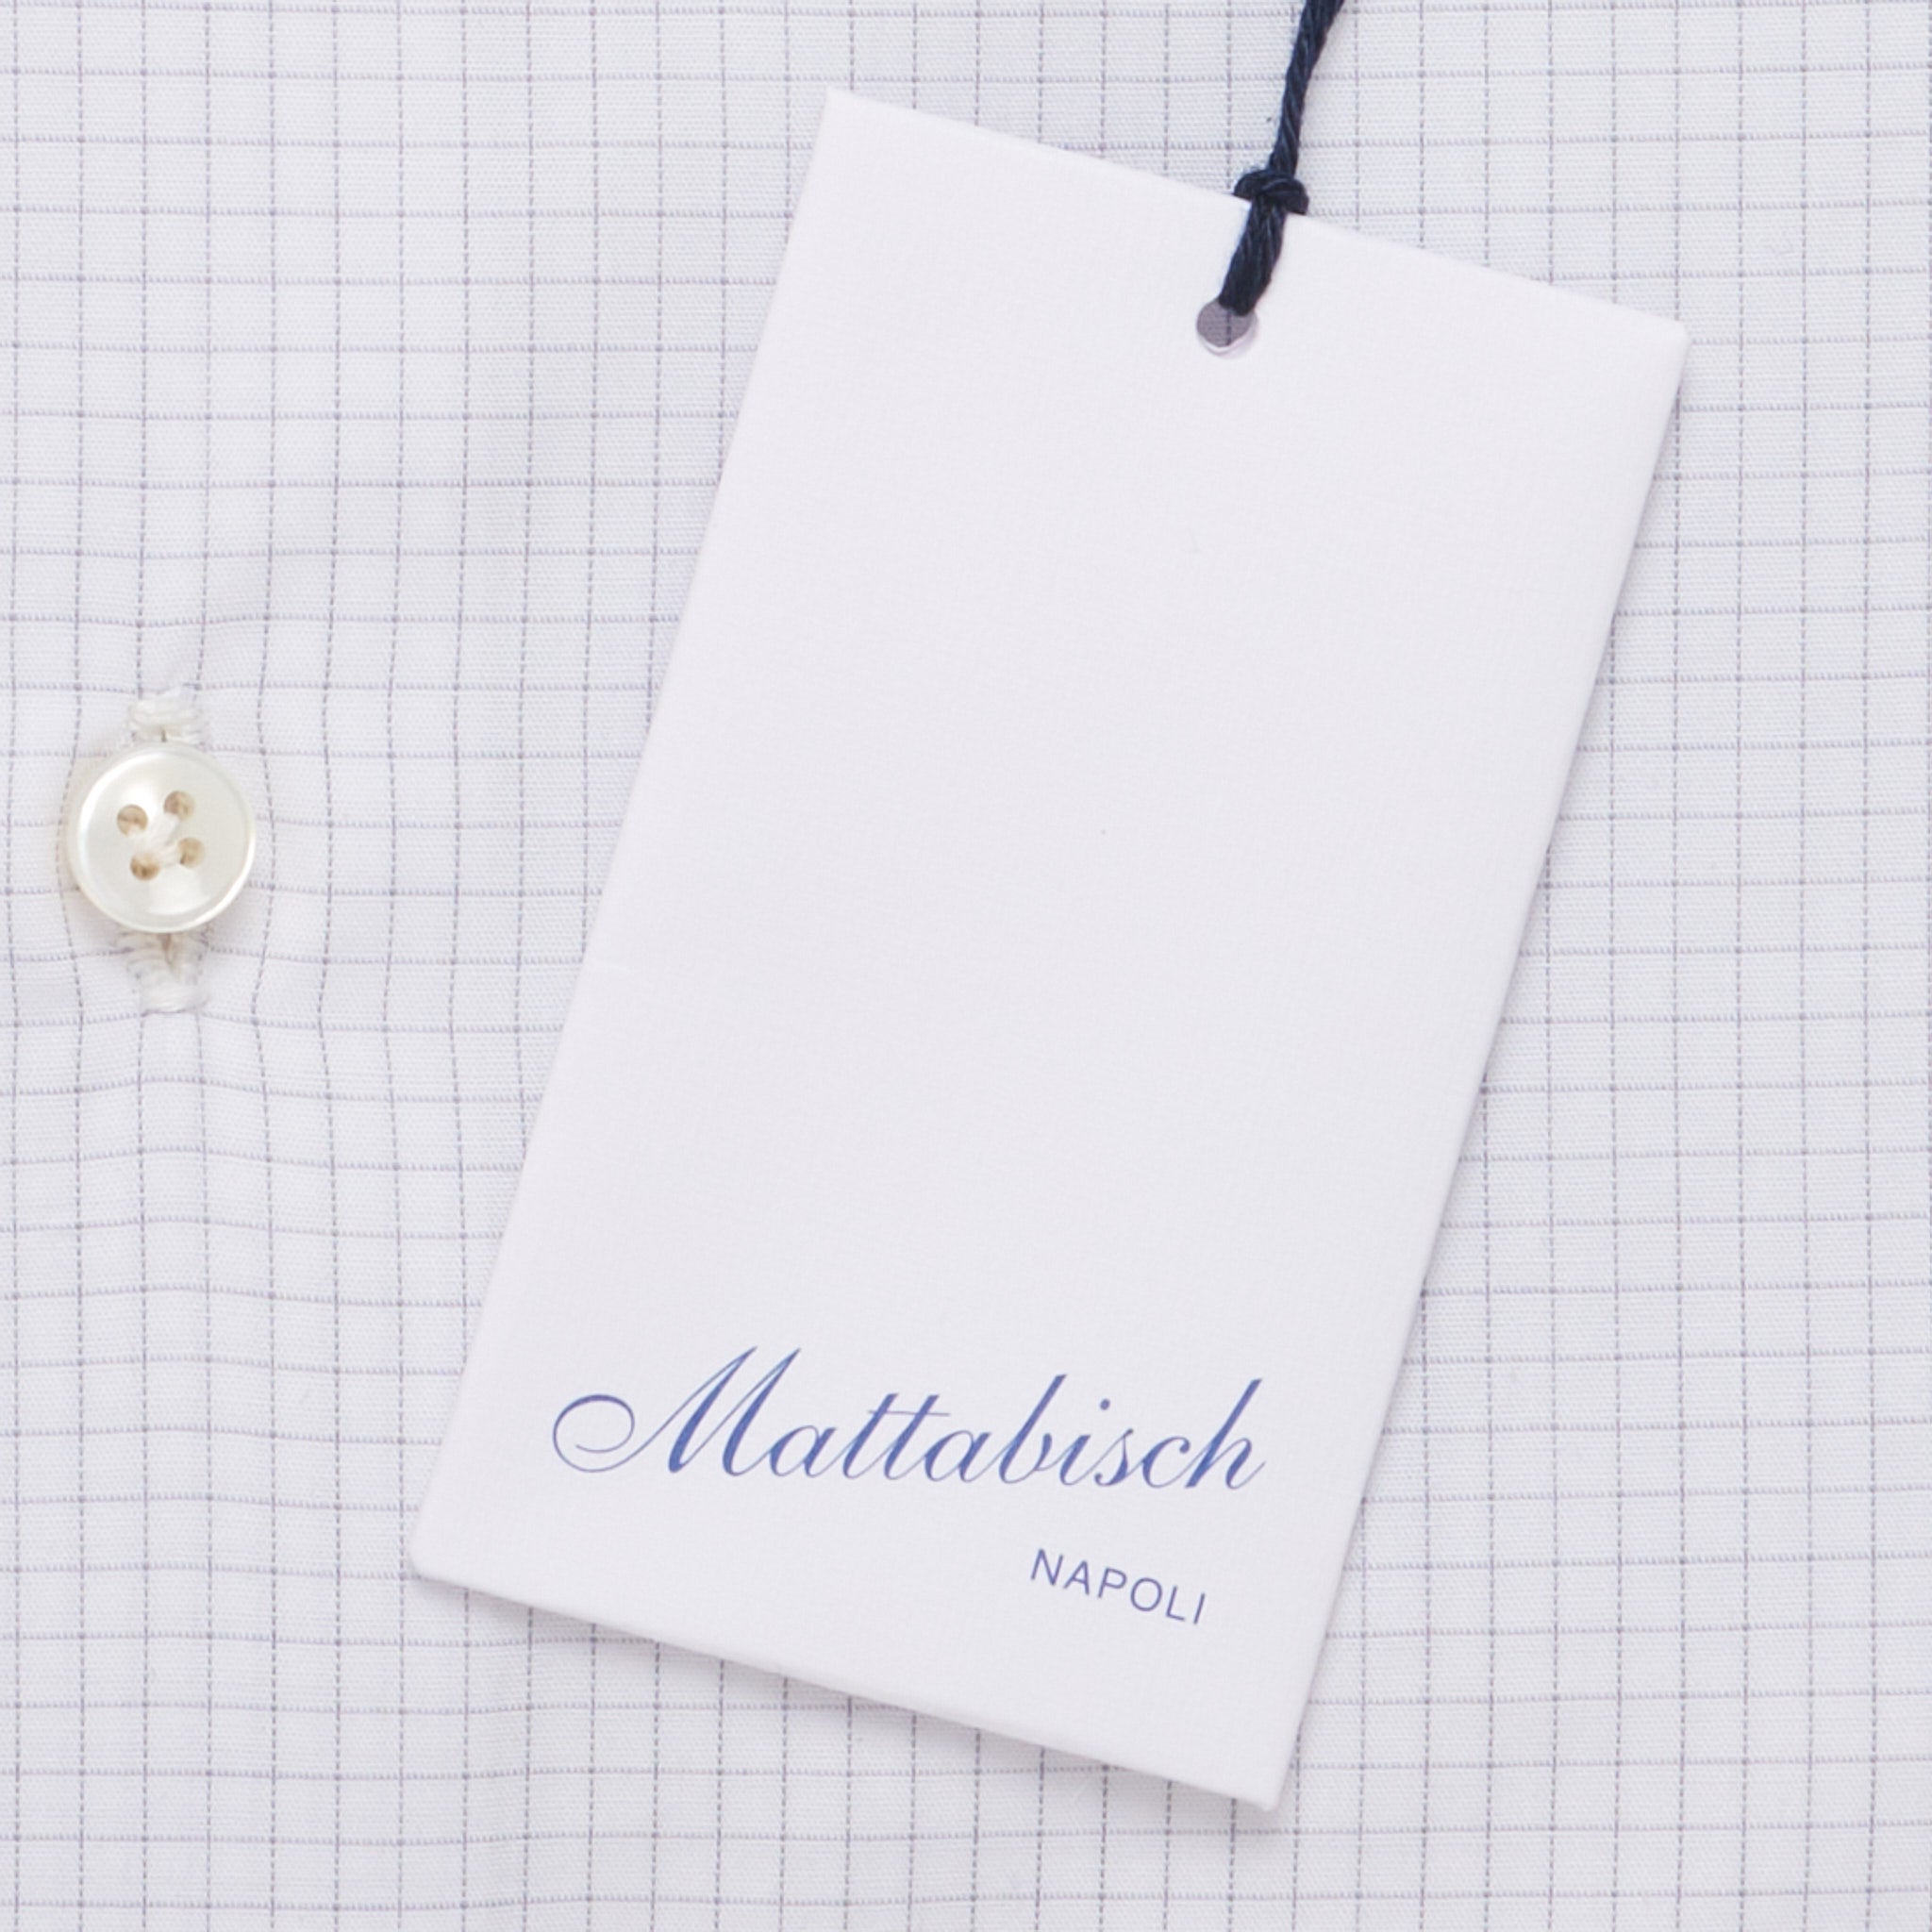 MATTABISCH by Kiton Handmade White Gray Checkered Dress Shirt NEW 14.5 MATTABISCH